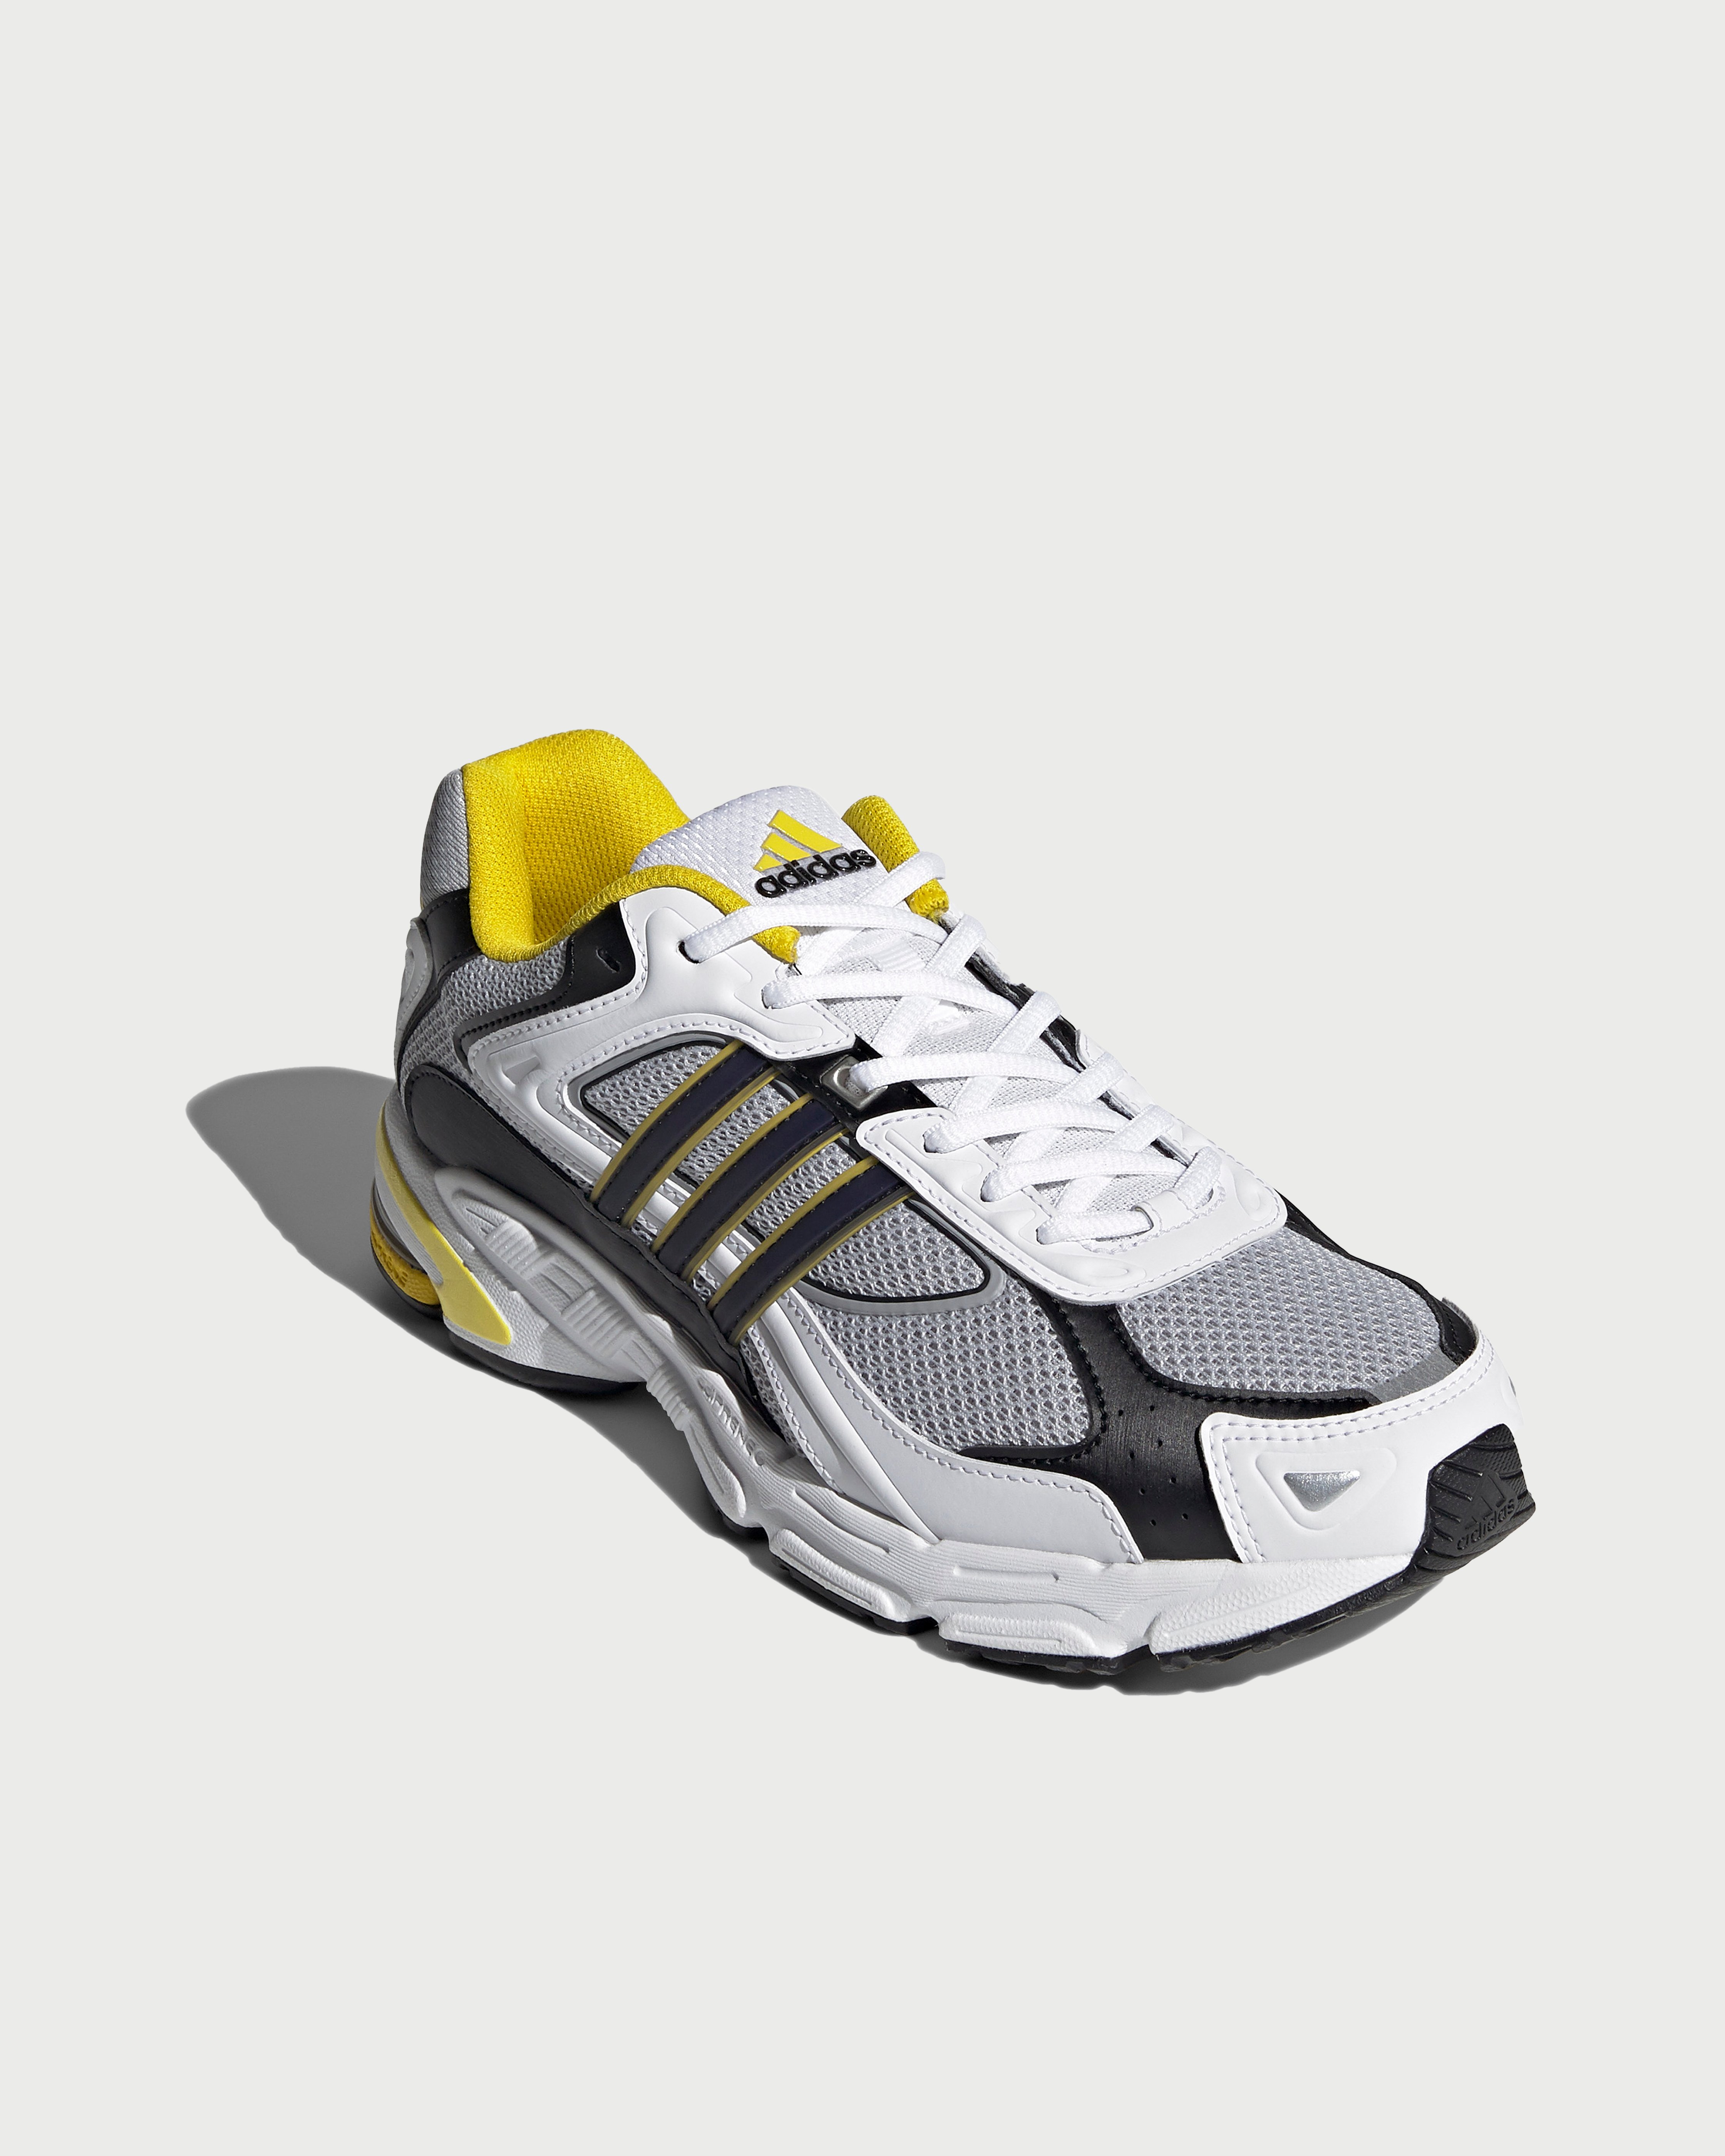 Adidas - Response CL White/Yellow - Footwear - White - Image 3